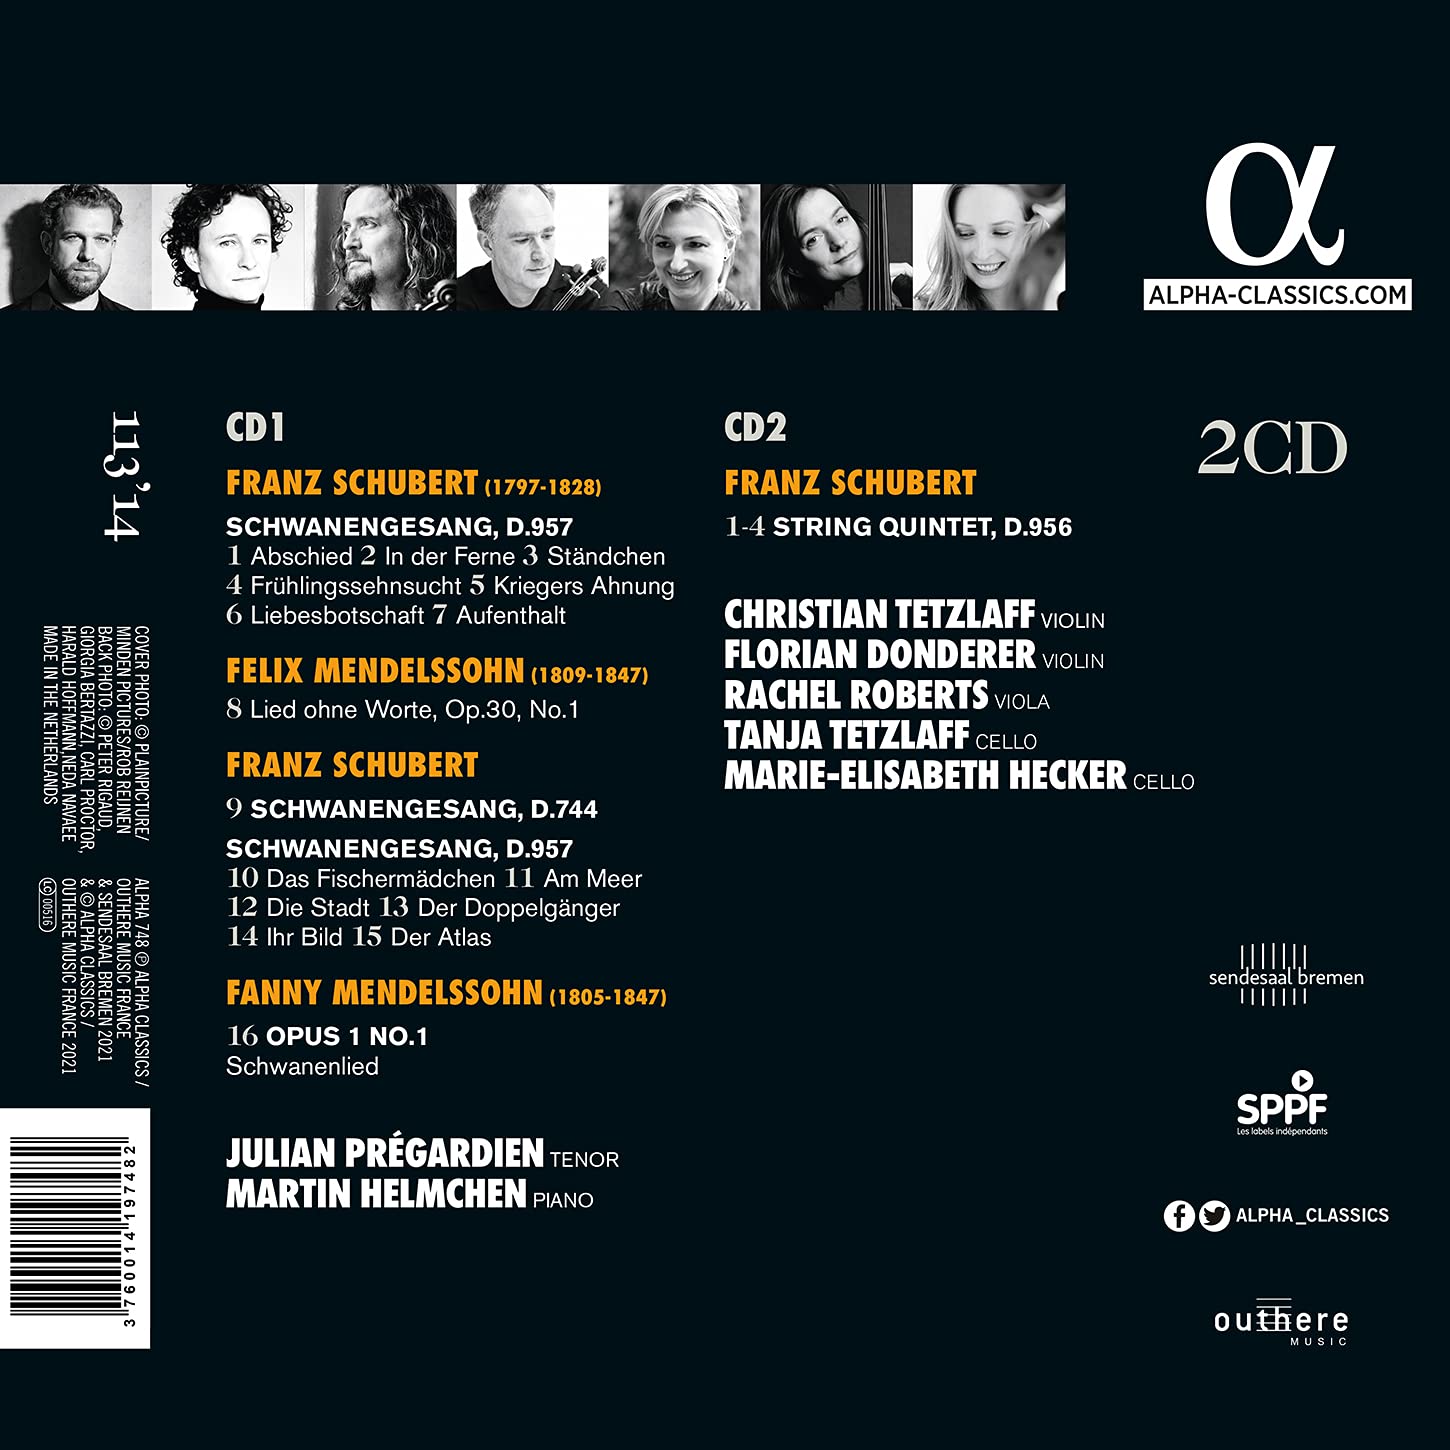 Julian Pregardien 슈베르트: 백조의 노래, 현악오중주 (Schubert: Schwanengesang D957, String Quintet D956)